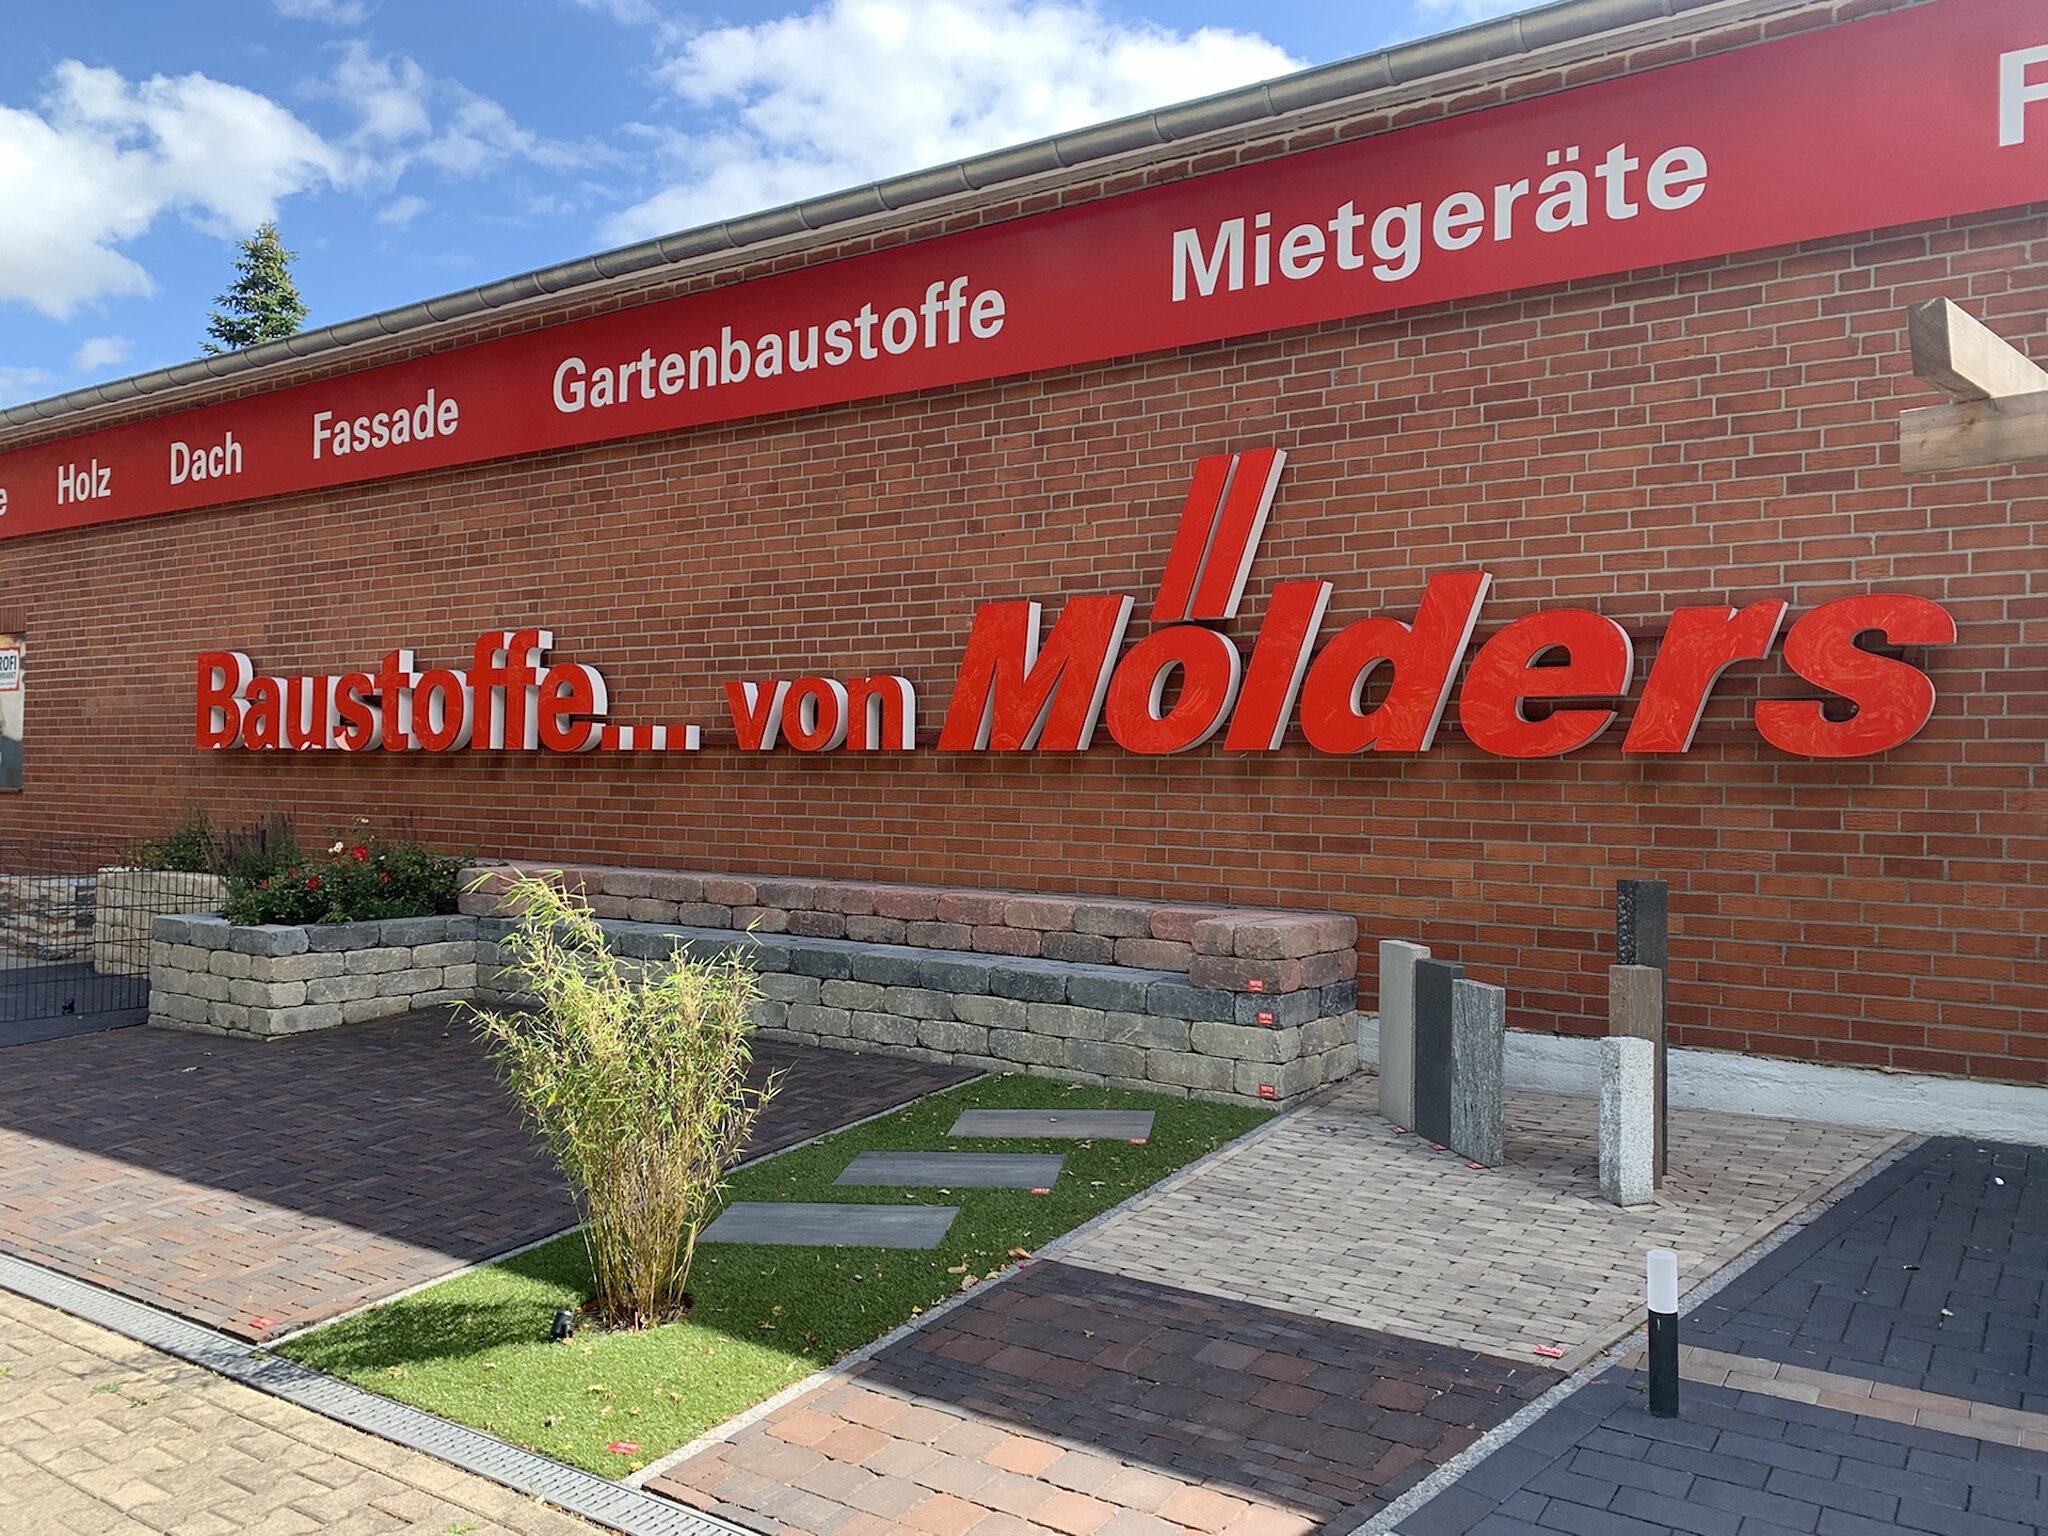 Außenfassade mit den Schriftzug "Baustoffe... von Mölders"